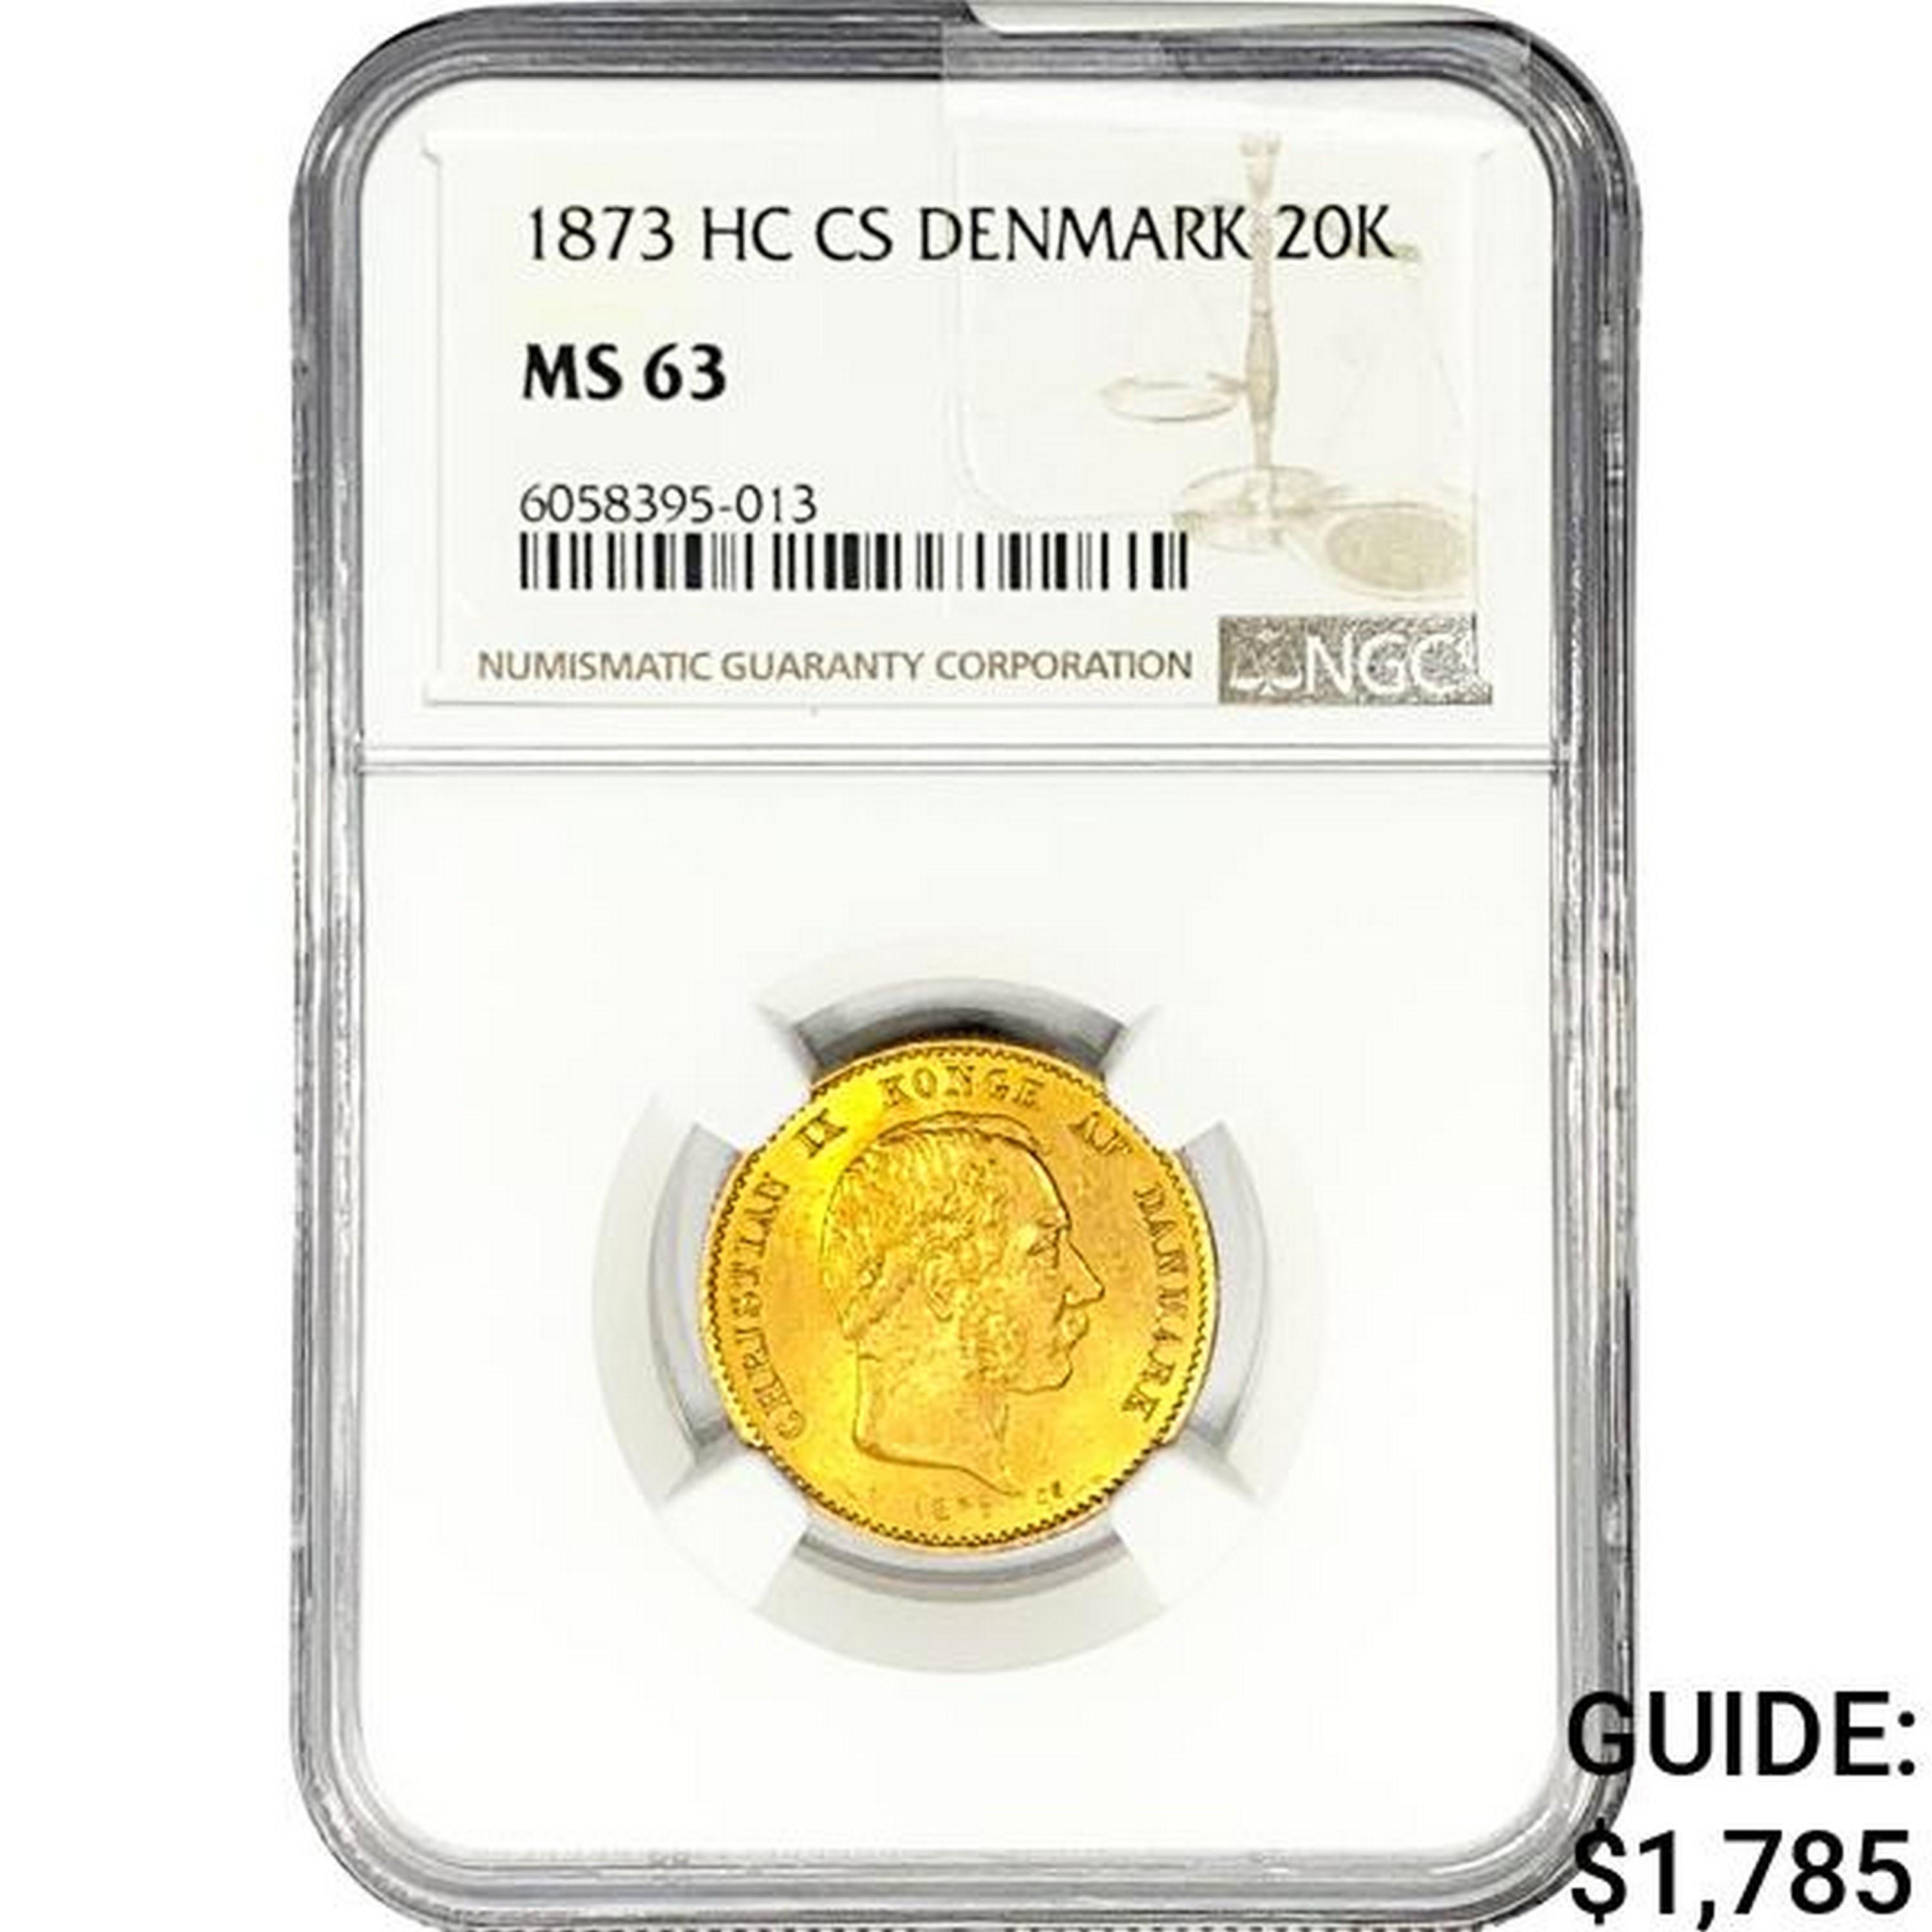 1873 .2593oz. Gold HC CS Denmark 20 Kroner NGC MS6